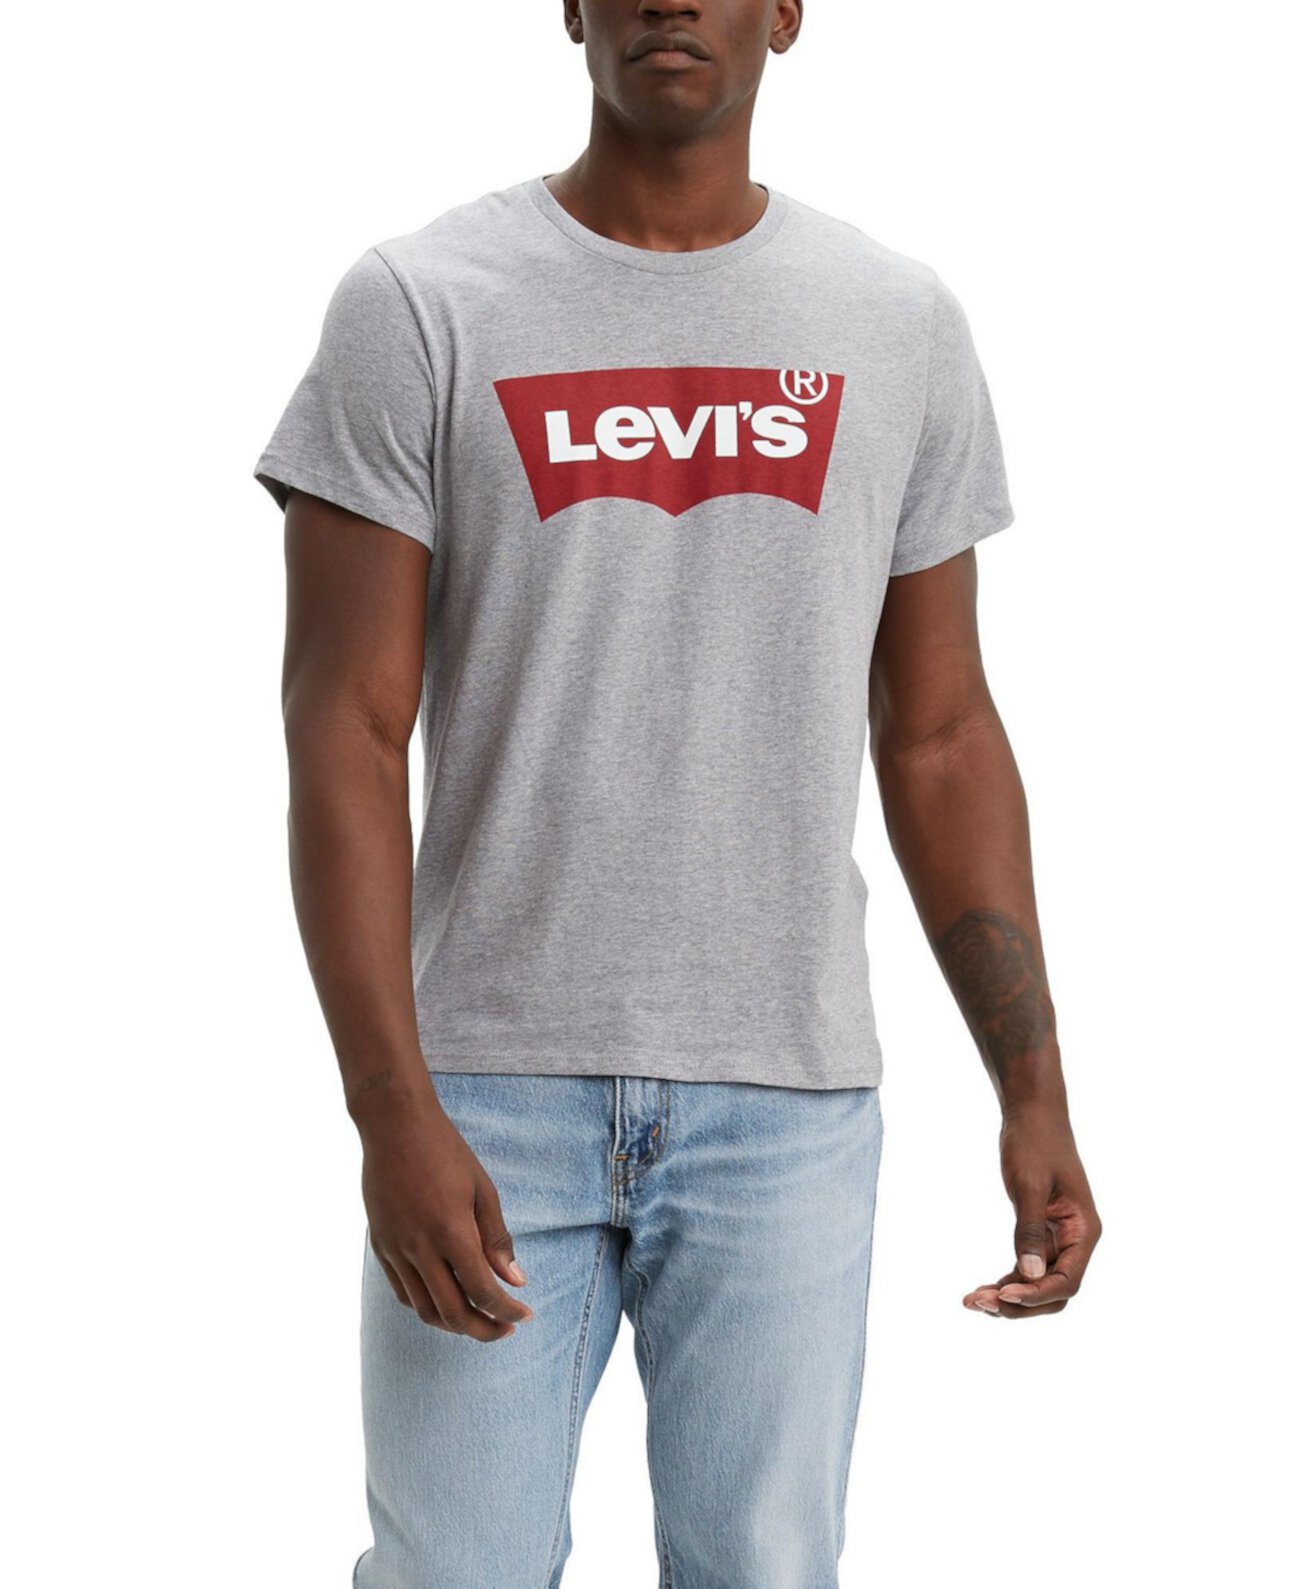 Мужская хлопковая футболка с графическим логотипом Levi's® Levi's®